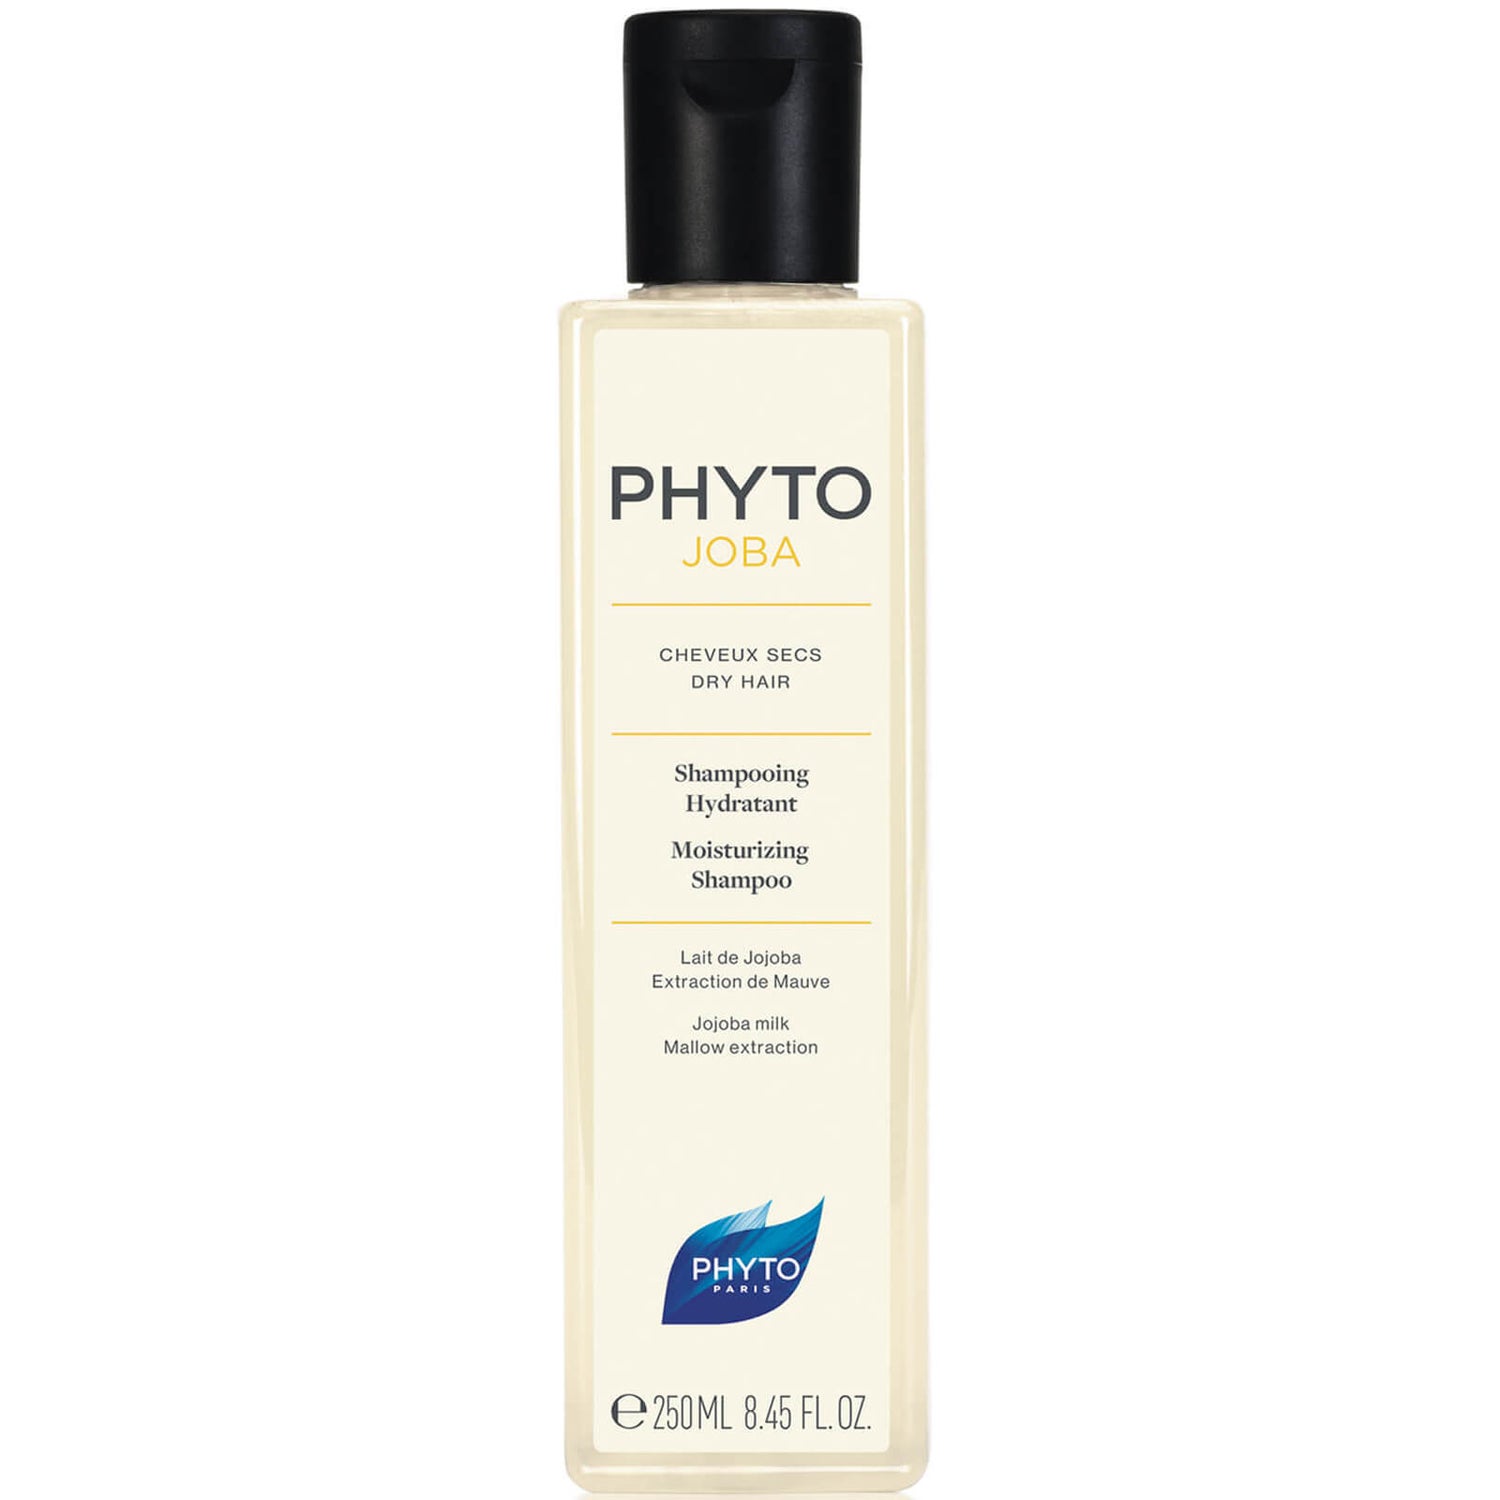 Phyto Phytojoba Shampoo 250ml